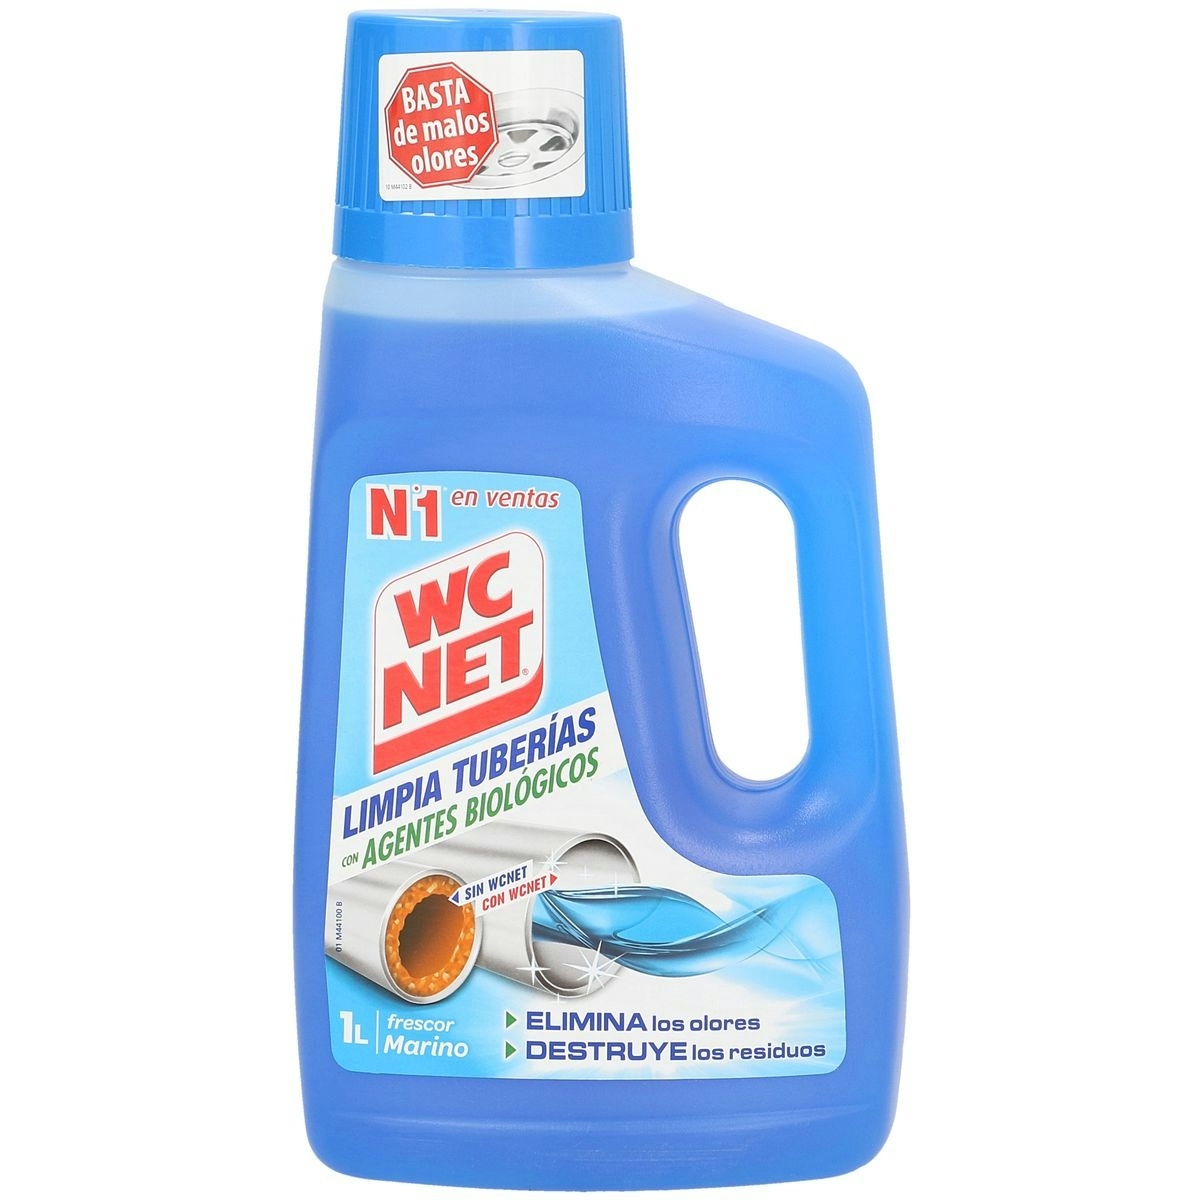 Limpia tuberías WC NET con agentes biológicos botella 1 lt